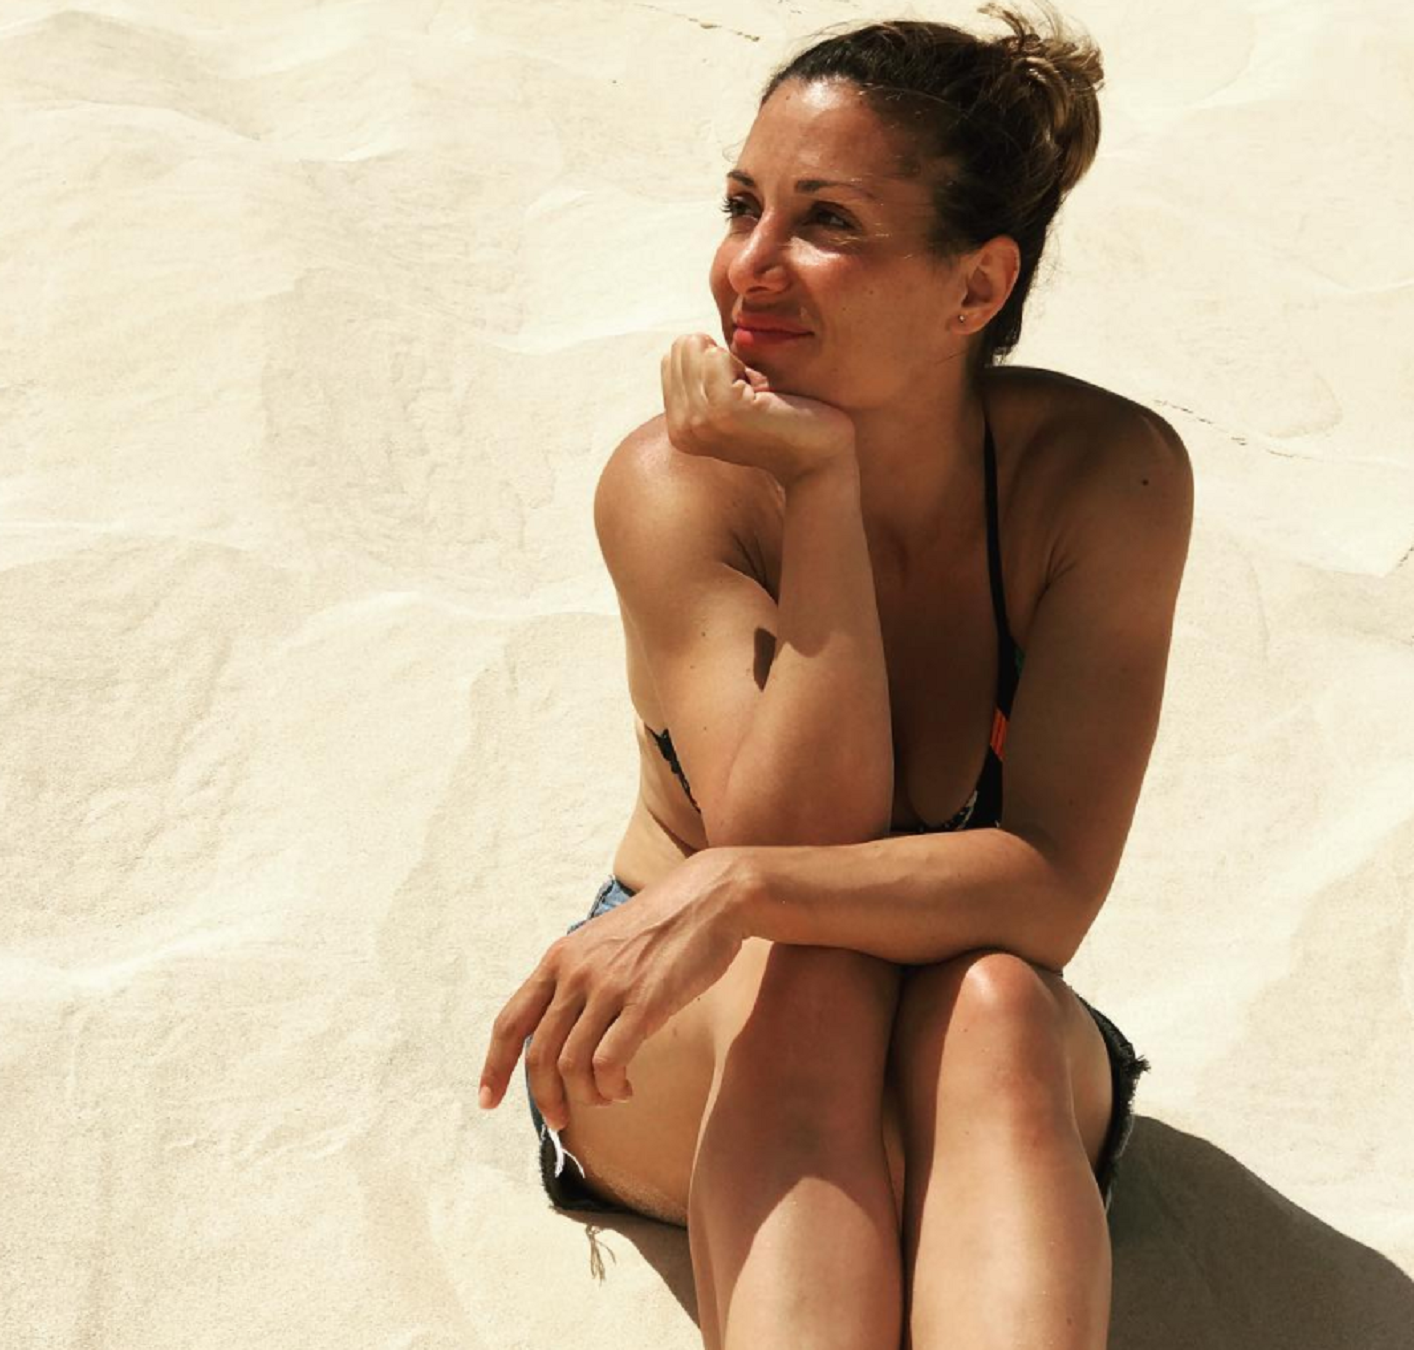 Nagore despide el verano con una foto en bikini tras otra